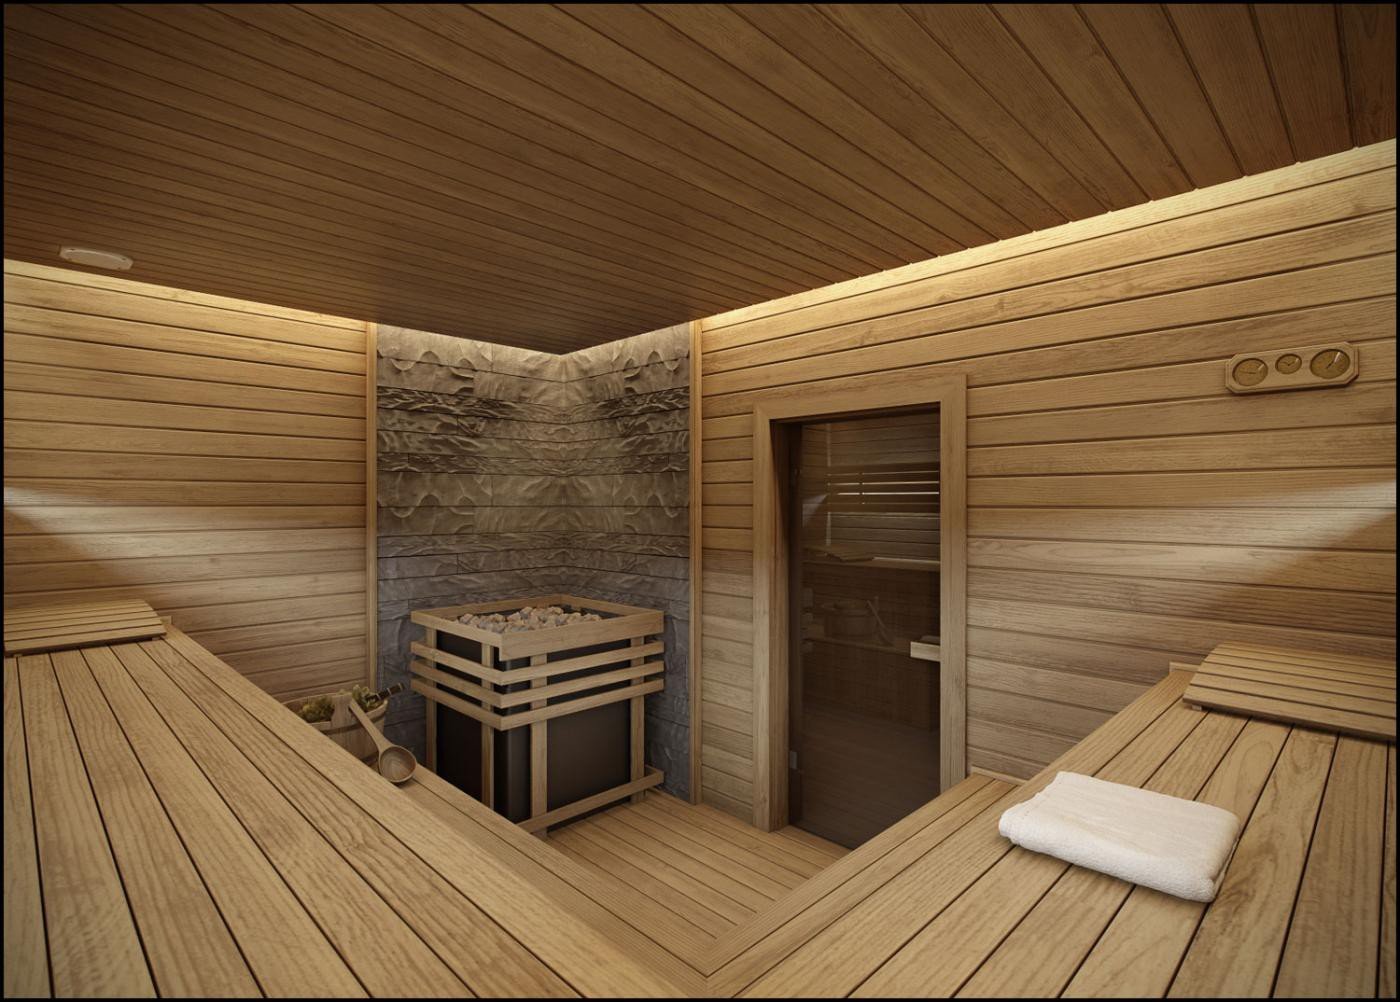 Интерьер бани: рекомендации по оформлению внутреннего пространства помещений бани с использованием различных материалов